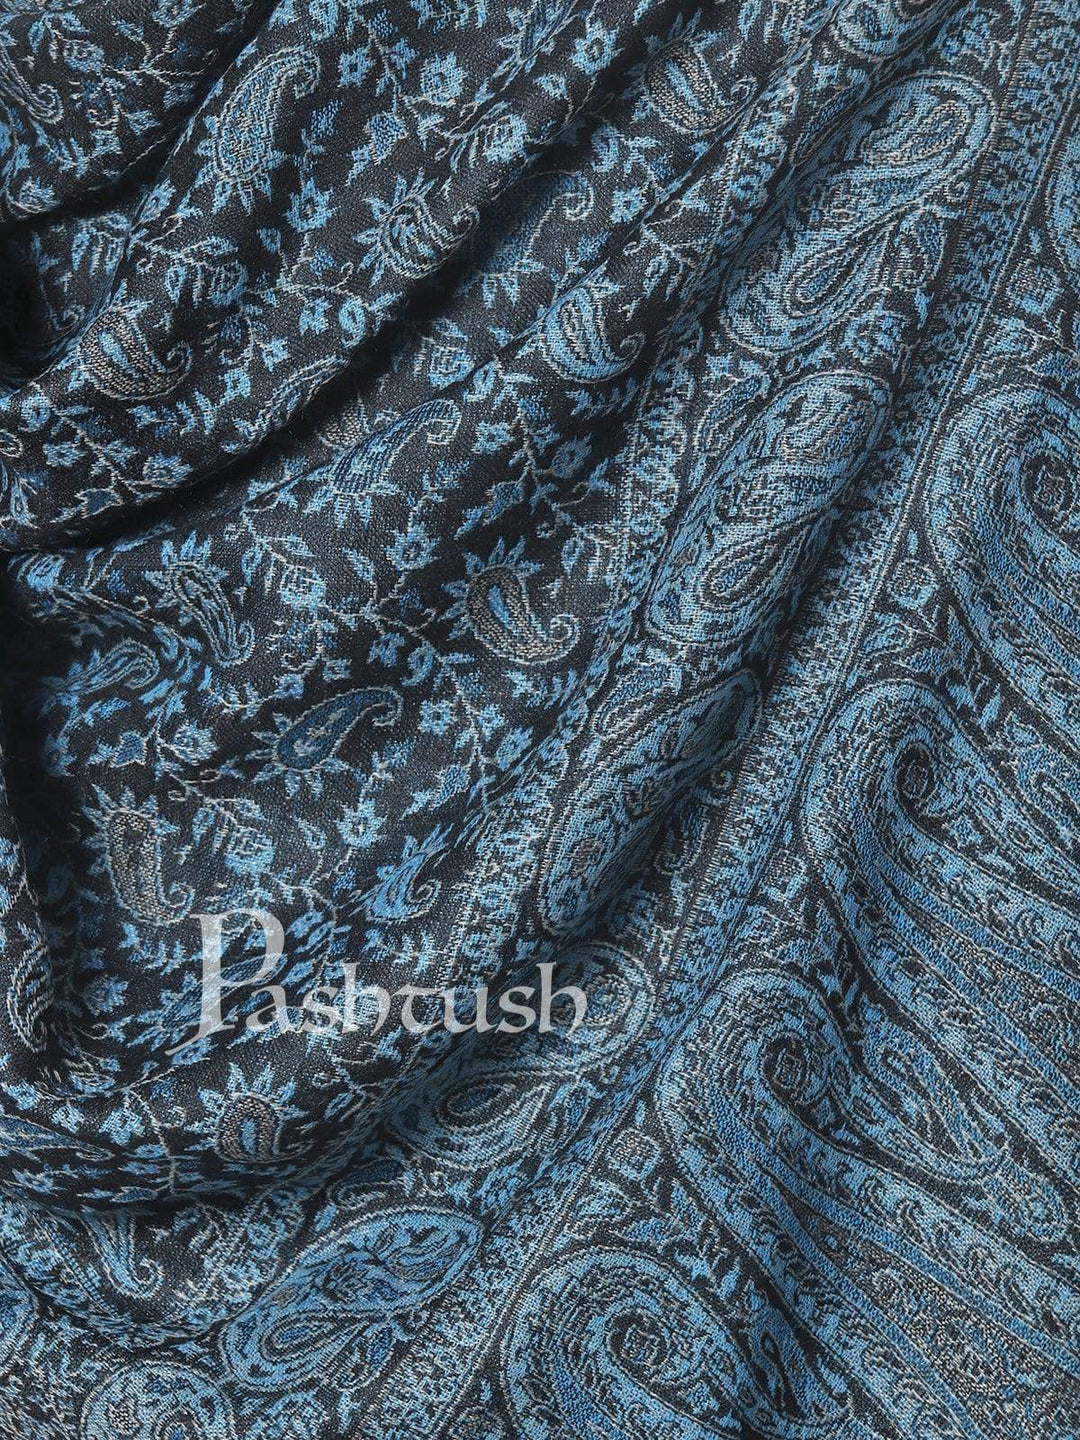 Pashtush Shawl Store 70x200 Pashtush Mens Ethic Stole, Fine Wool, Soft and Warm, Azure Blue